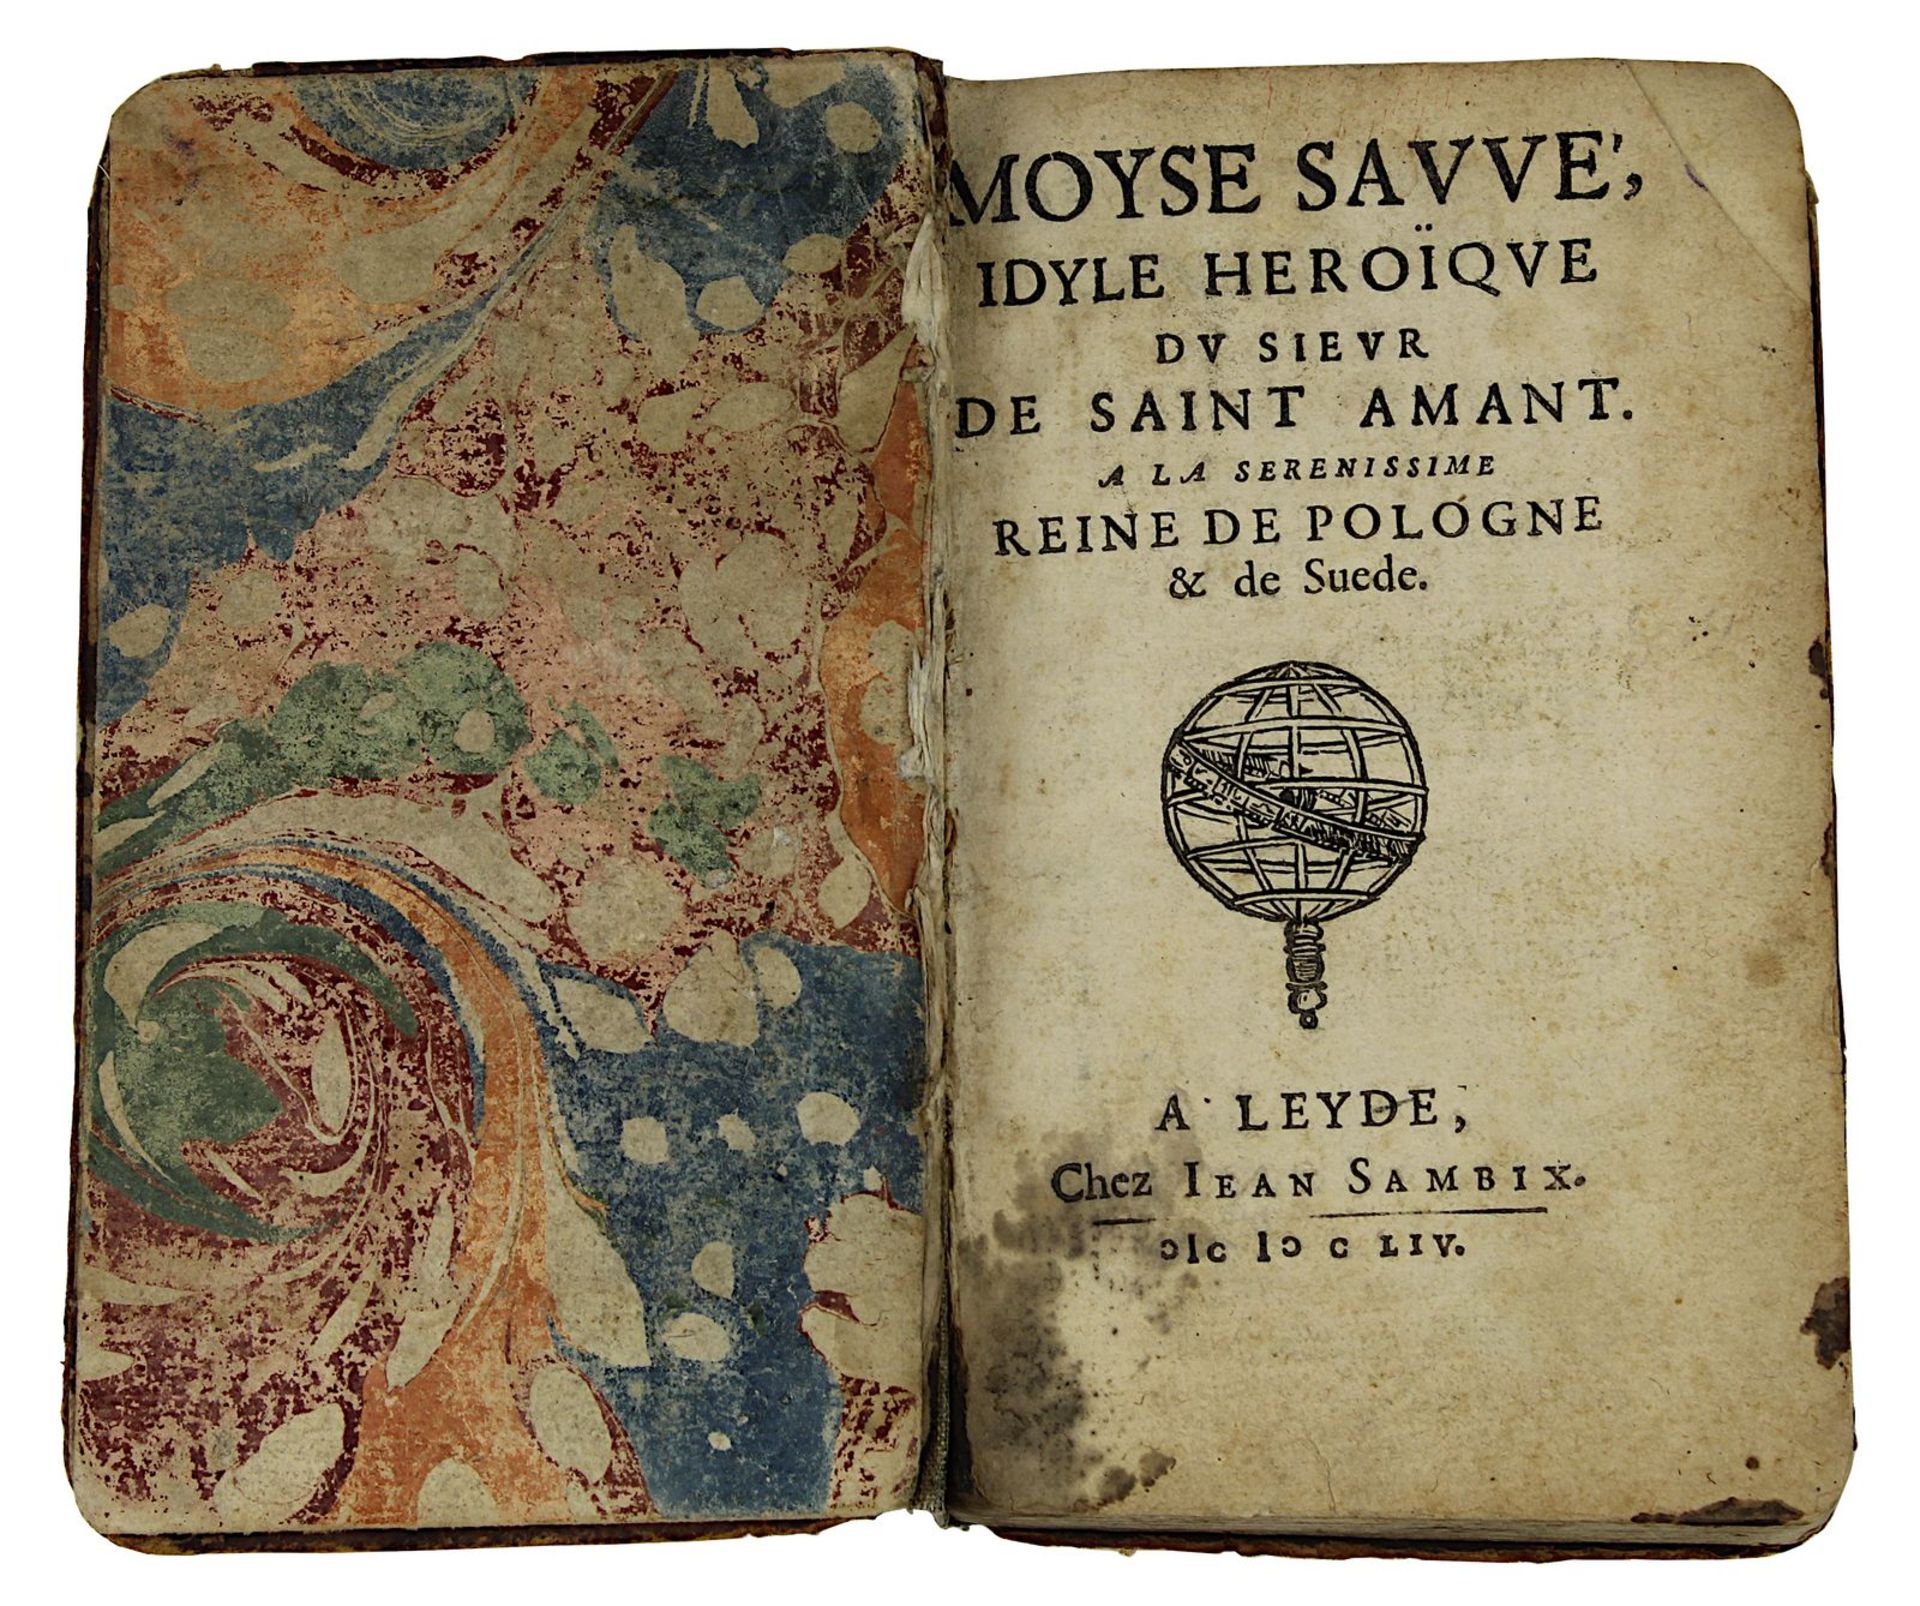 "Moyse Sauvé, Idyle héroïque du Sieur de Saint Amant", "A la Serenissime Reine de Pologne & de